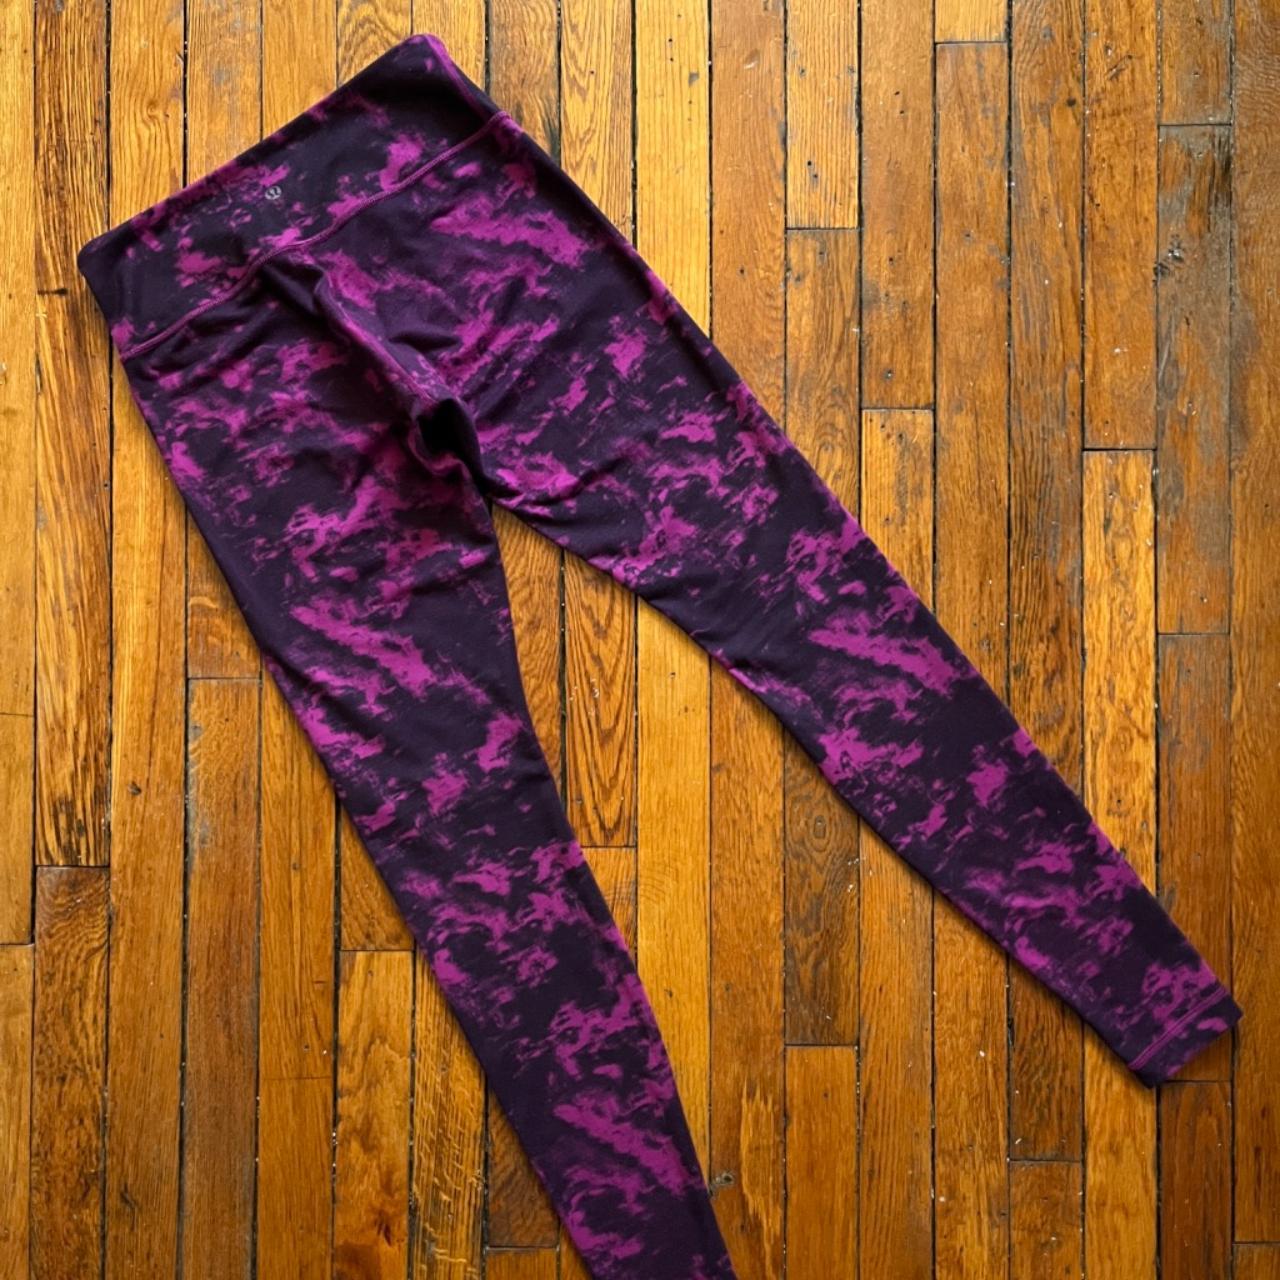 Ladies Leggings Yoga Activewear Leopard Print Black, Purple or Teal (37043)